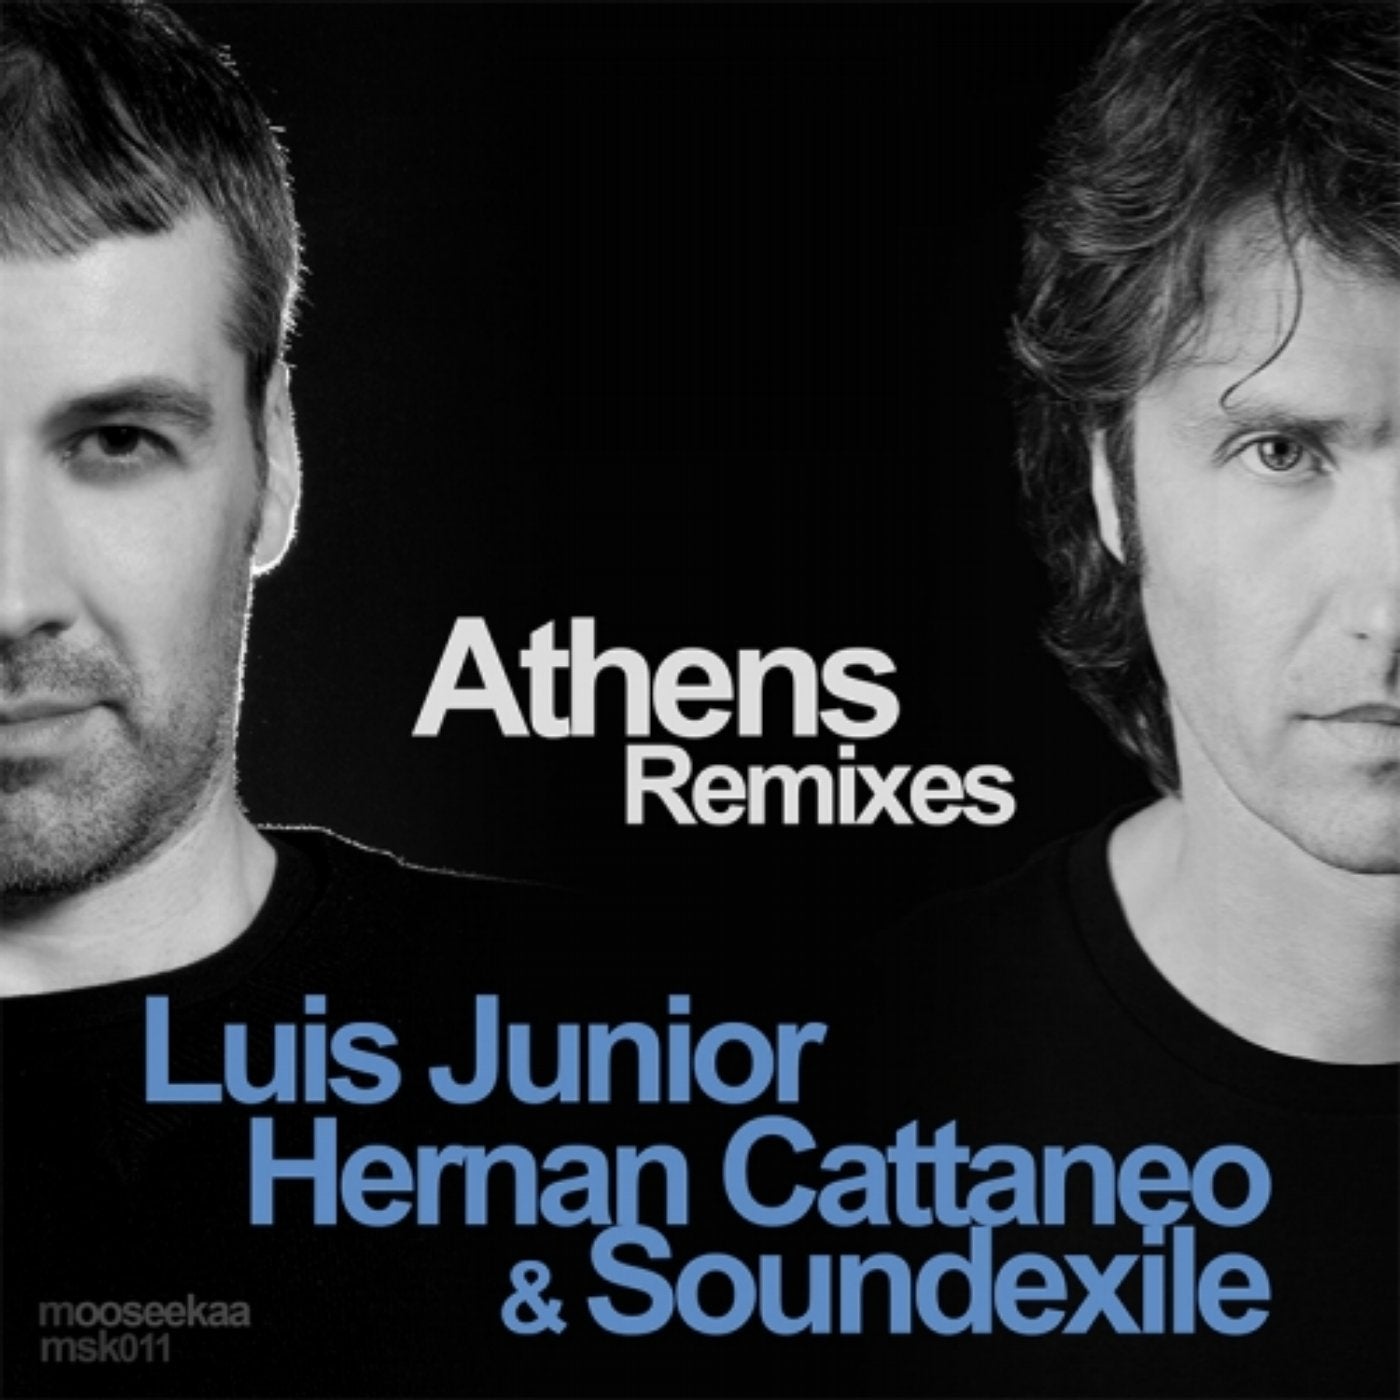 Athens Remixes